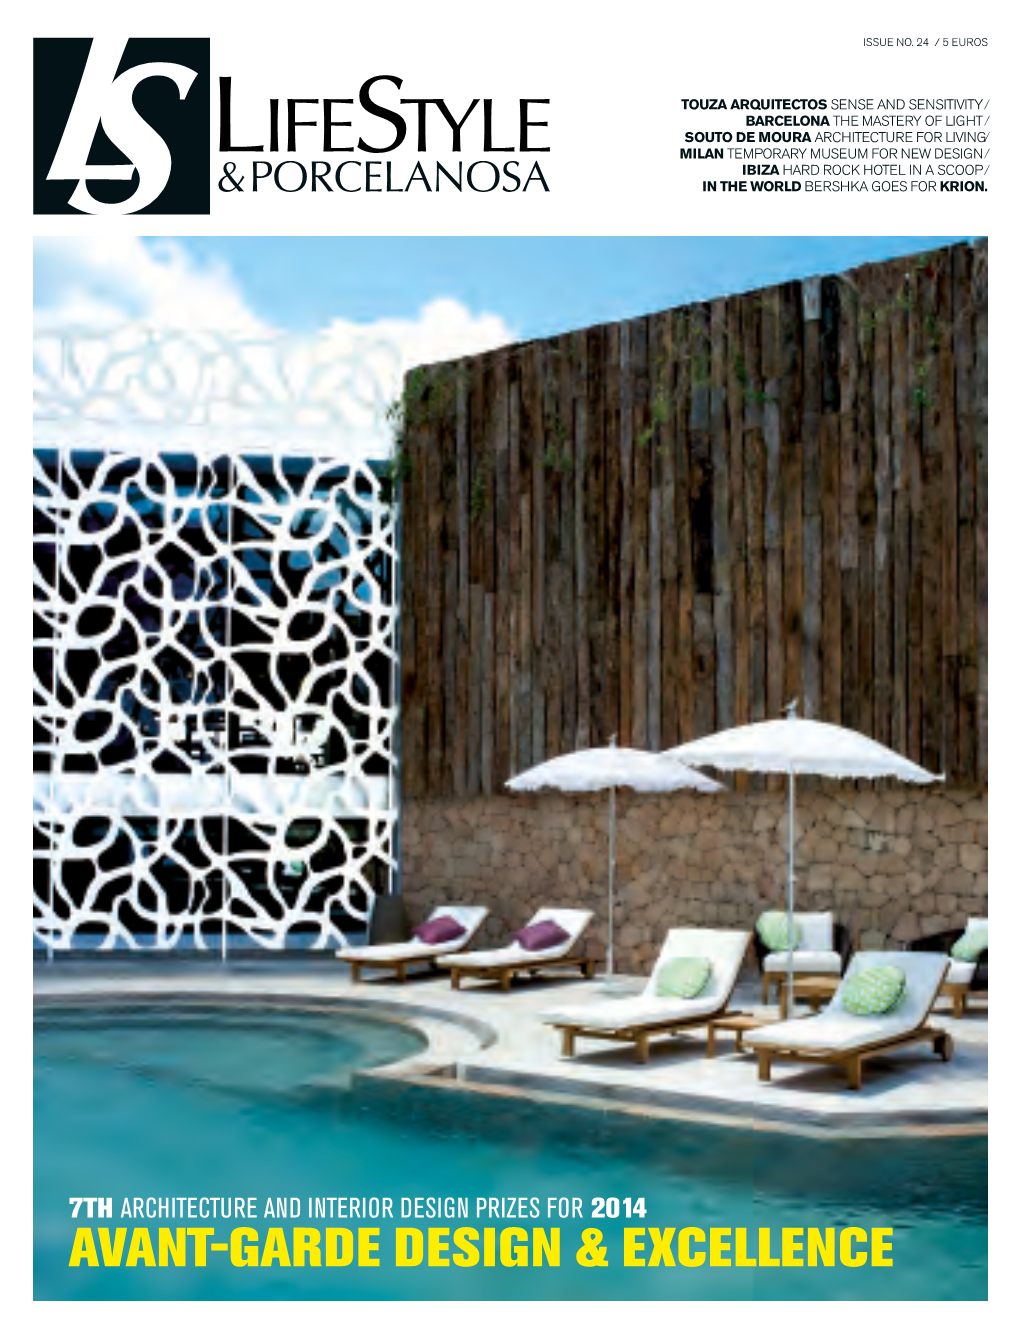 Porcelanosa Lifestyle Magazine Issue 24